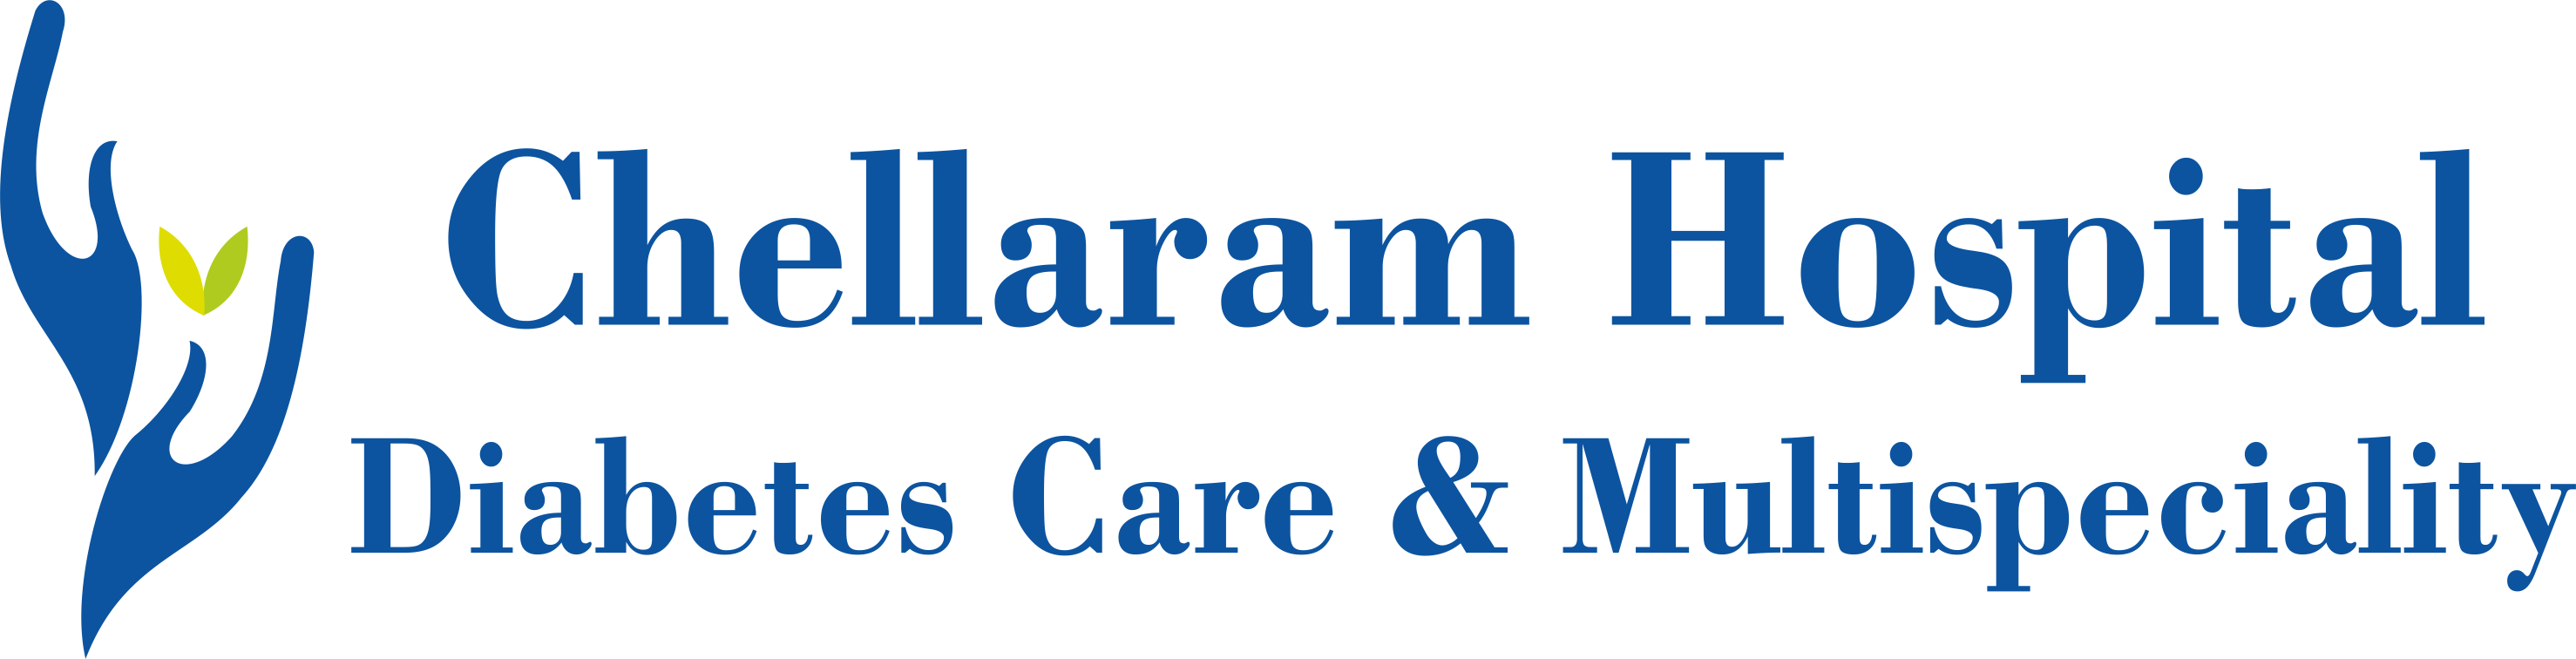 Chellaram Hospital - Diabetes Care & Multispeciality Logo